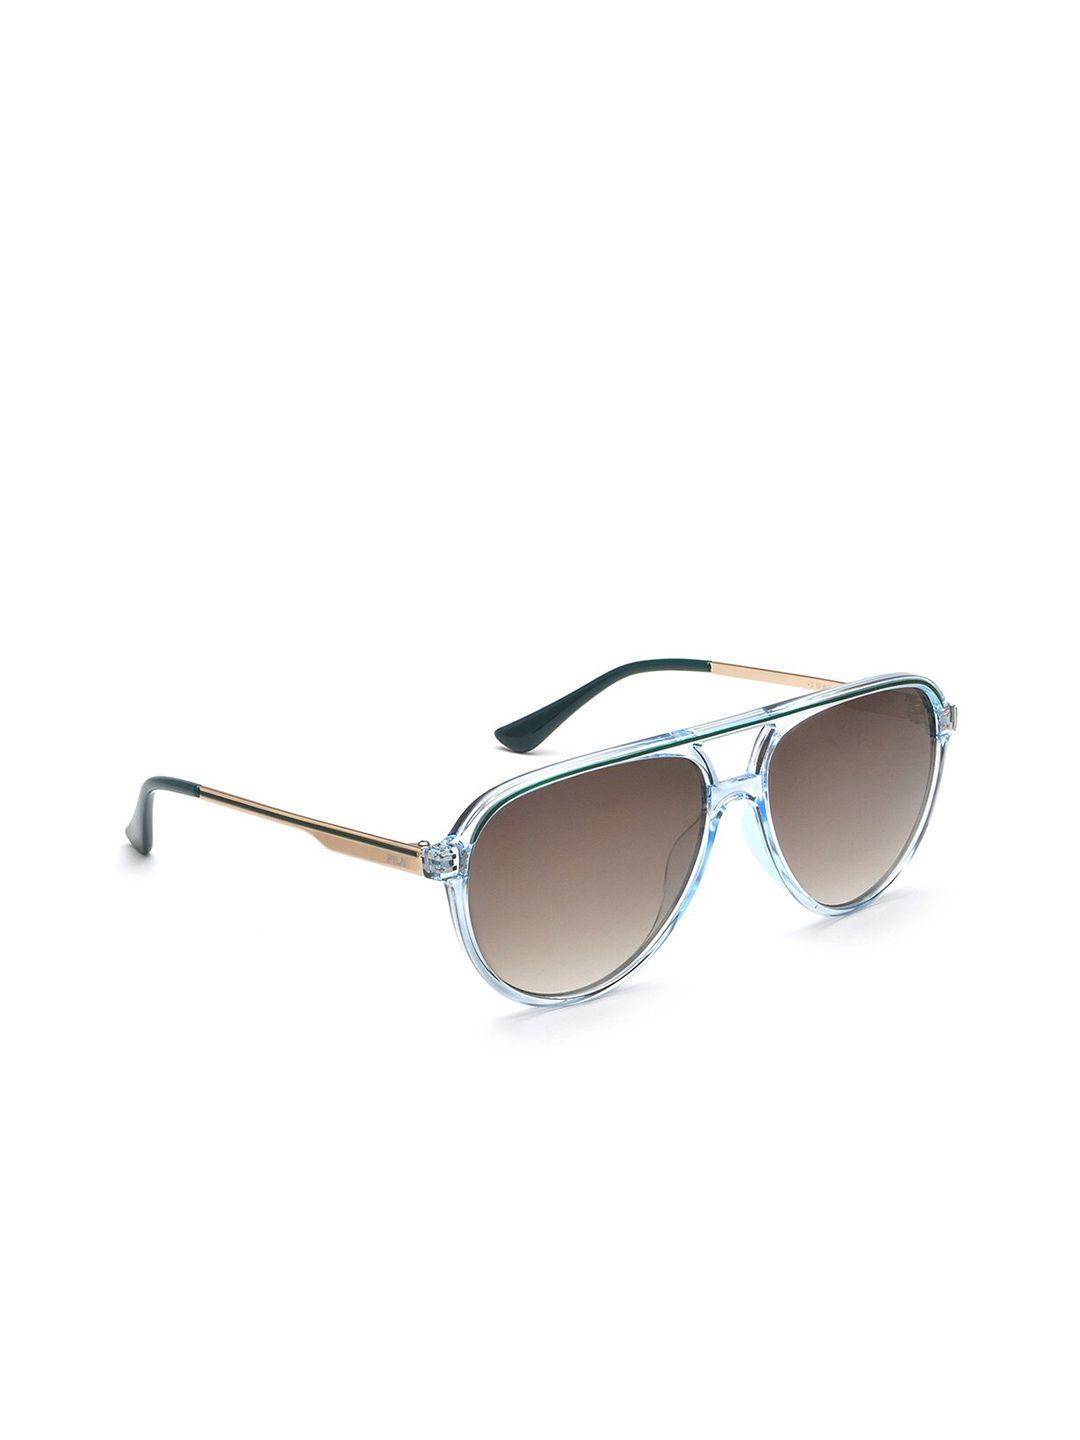 fila-men-aviator-sunglasses-with-uv-protected-lens-sfi601k57900gsg